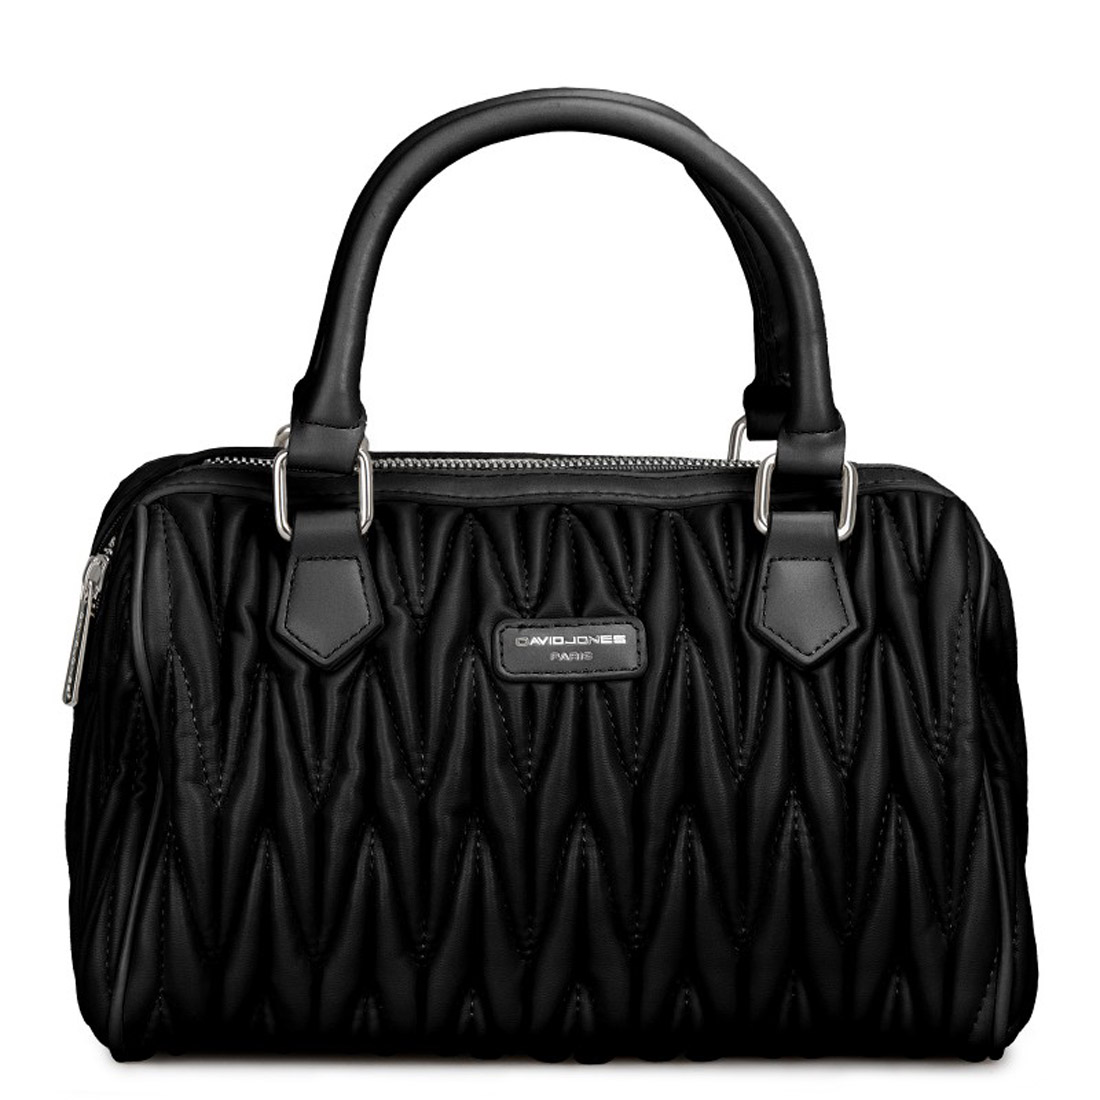 David Jones Handbag 6516-3 | Traveller Store